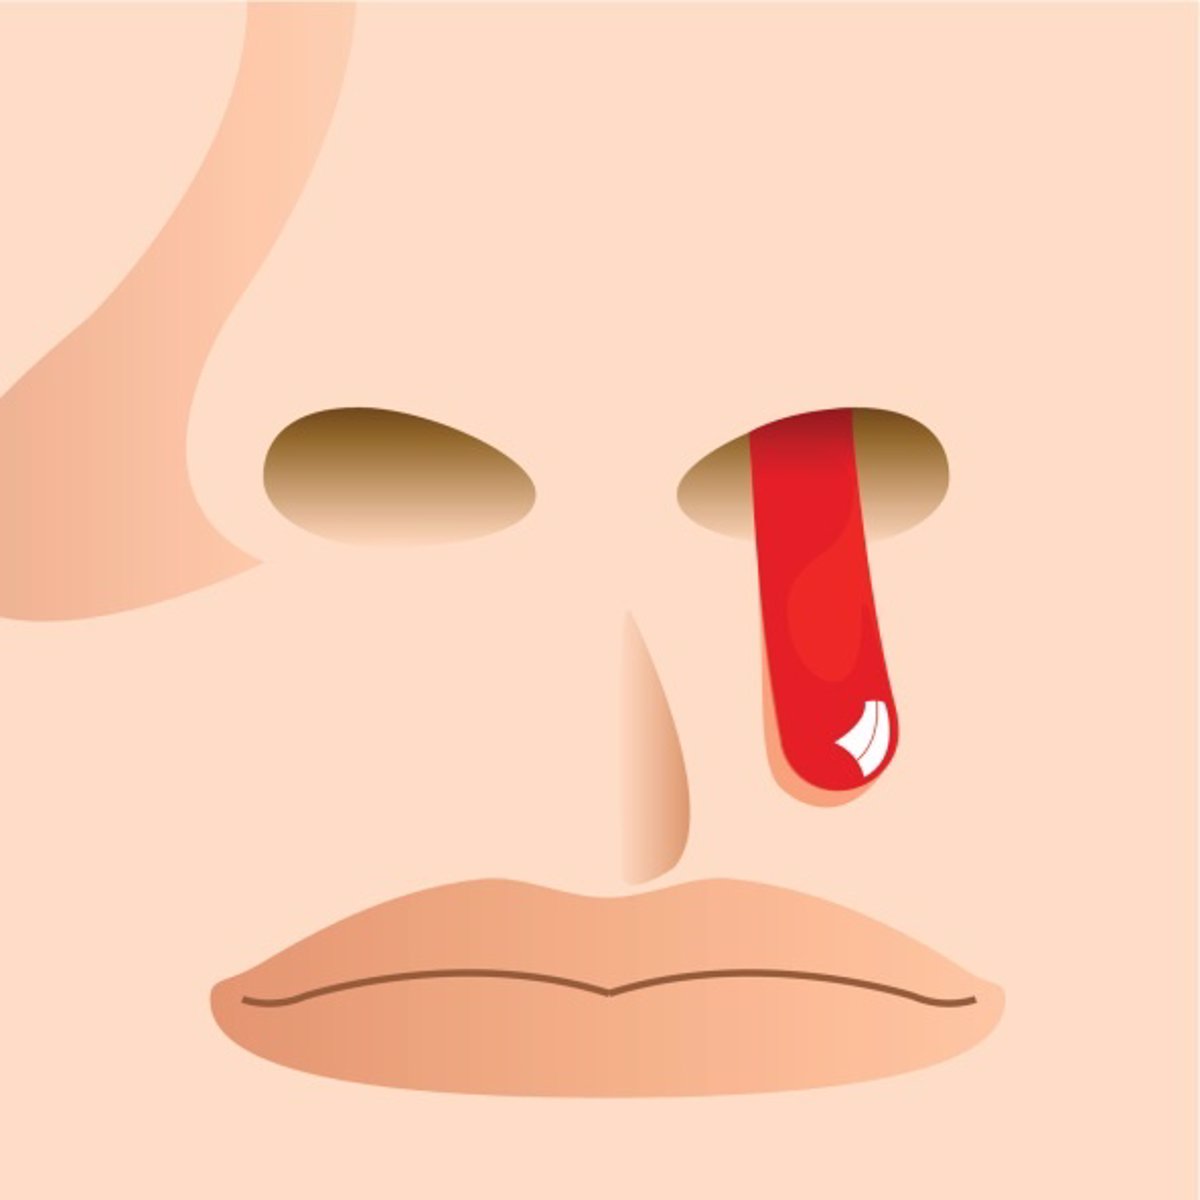 Laboratorio Retener dormitar Hemorragias nasales: ¿banales o graves?